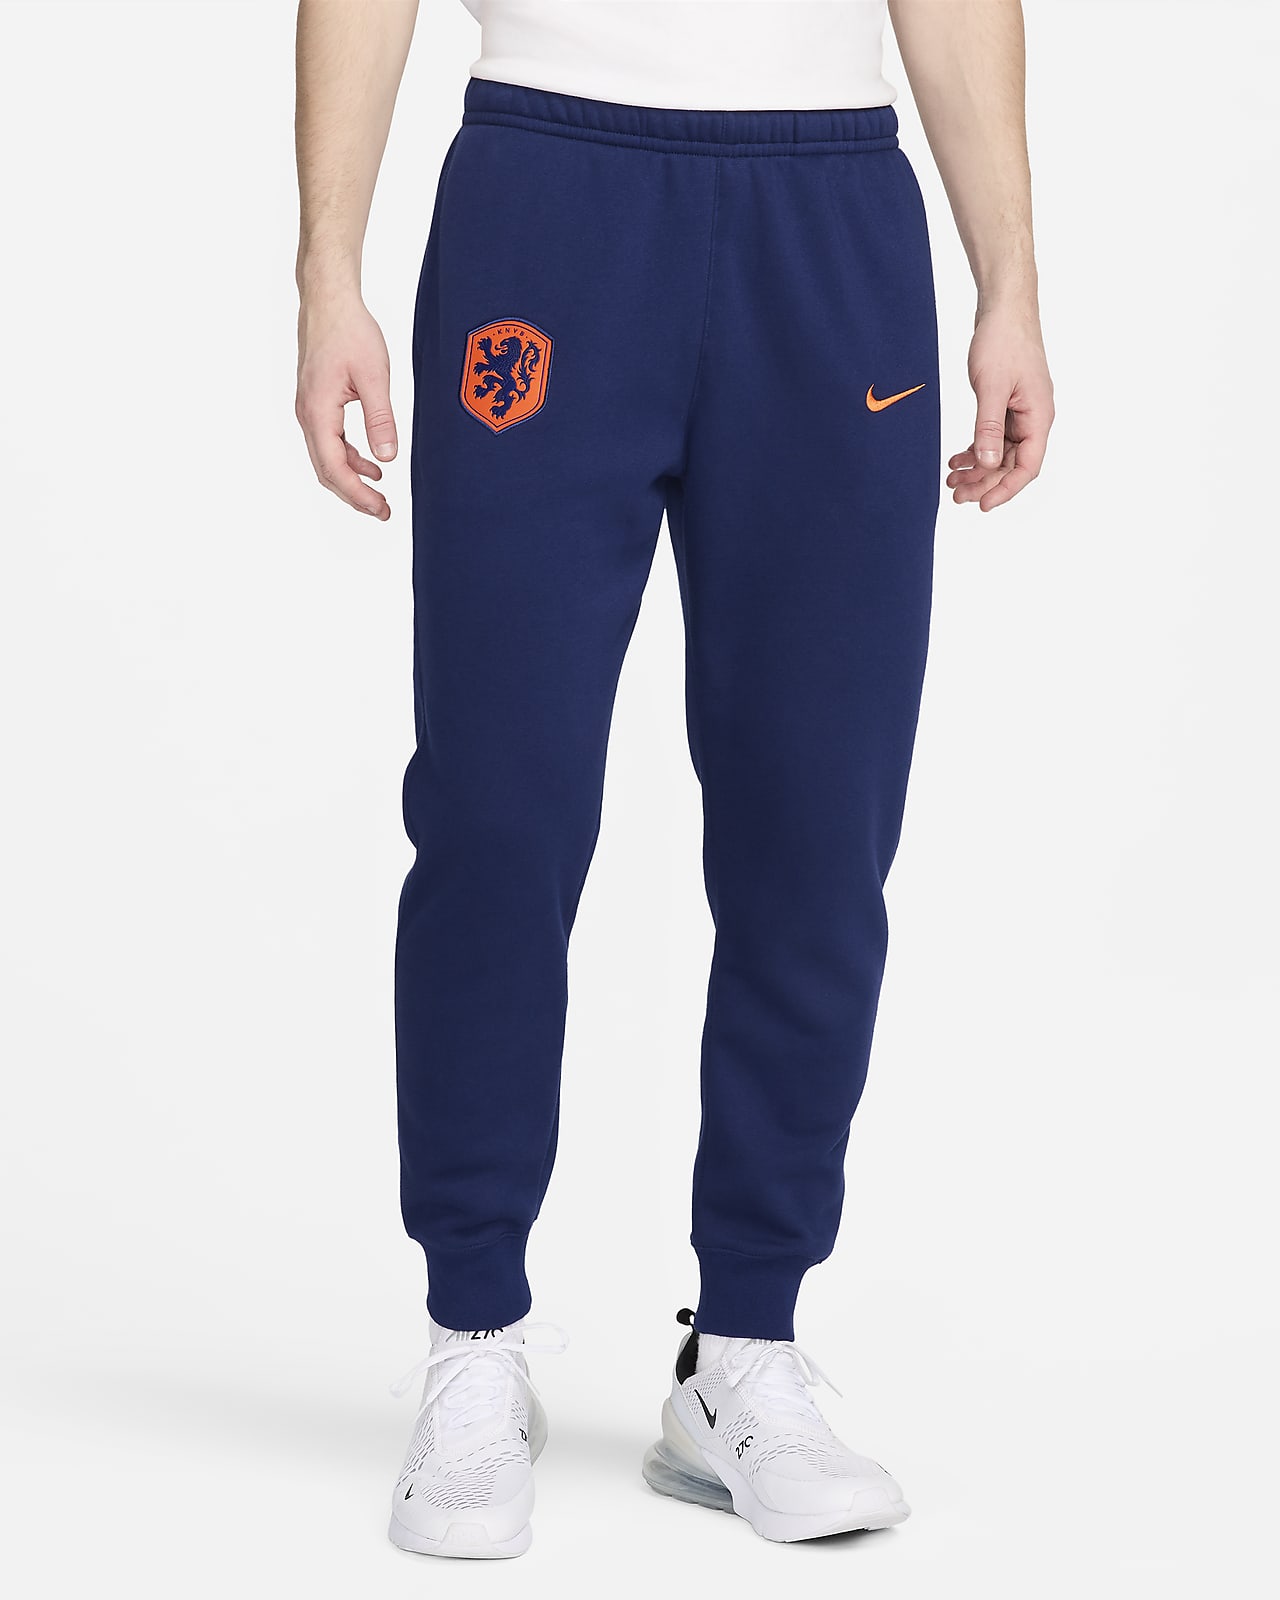 Fotbollssweats Nederländerna Club Nike i fleece för män